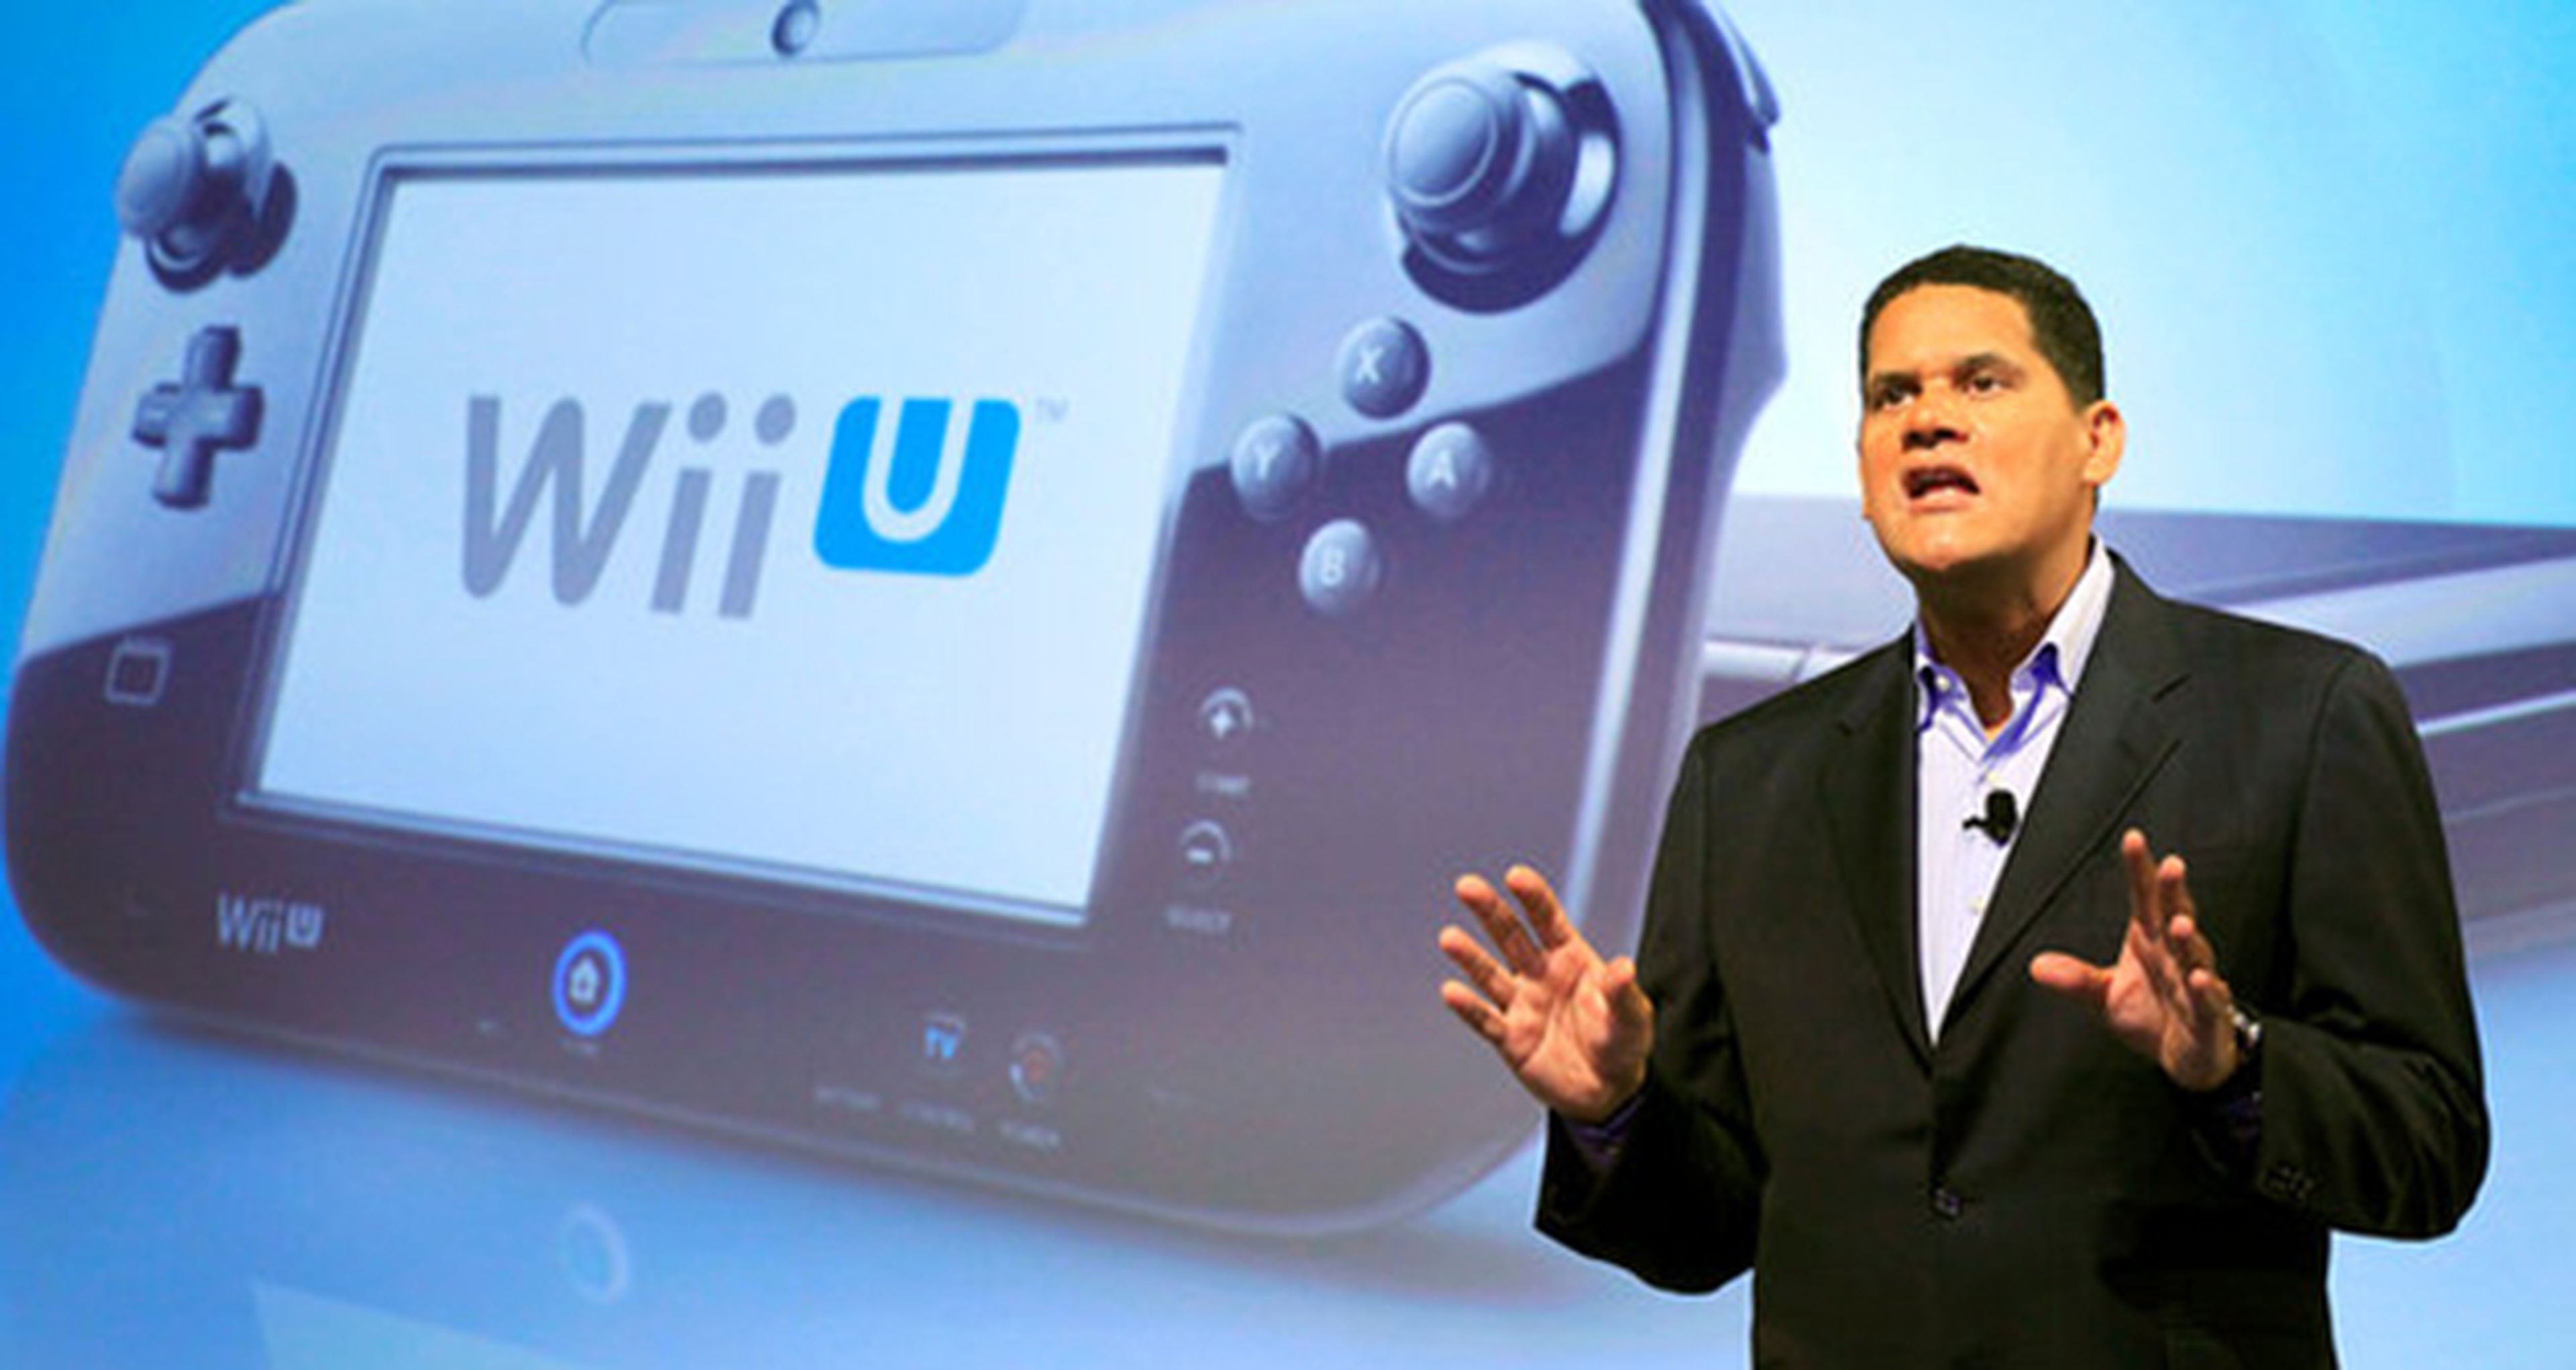 Phil Spencer alucina con Gears of War, el valor de Wii U... Las noticias de la semana 23/11/14